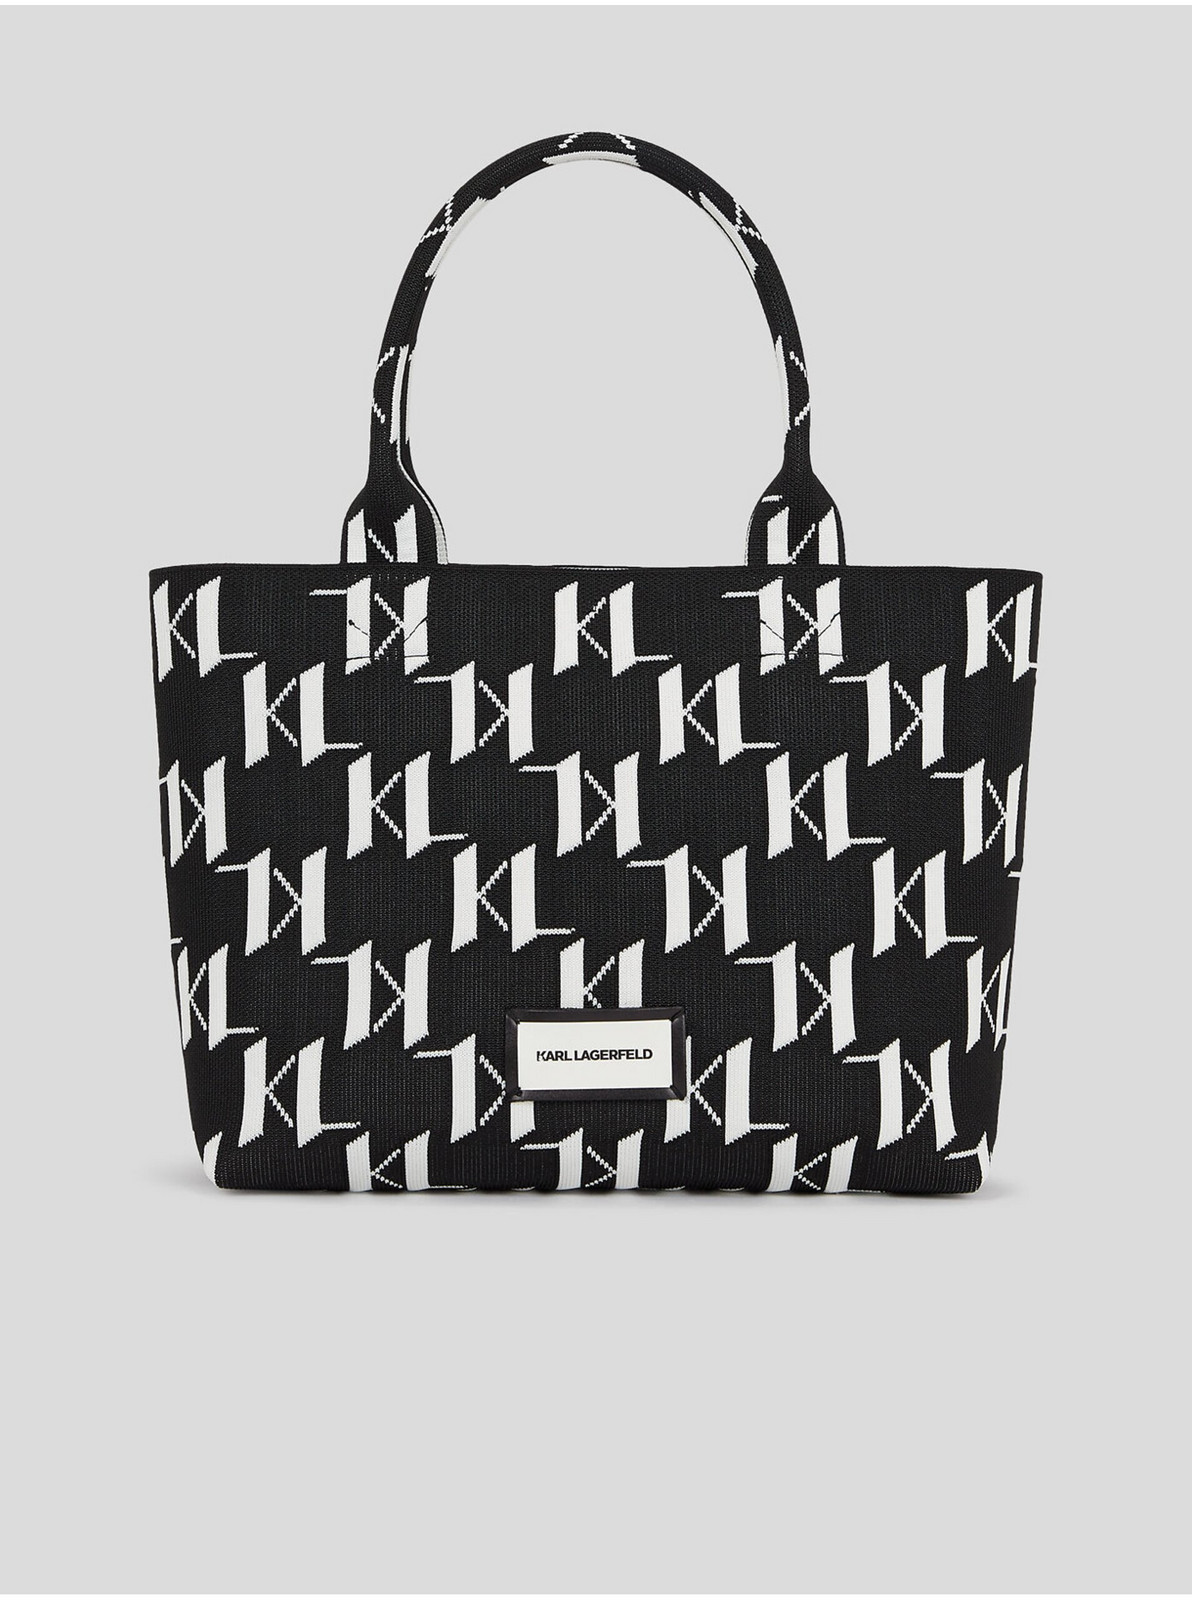 Bílo-černá dámská vzorovaná kabelka KARL LAGERFELD Monogram Knit - Dámské